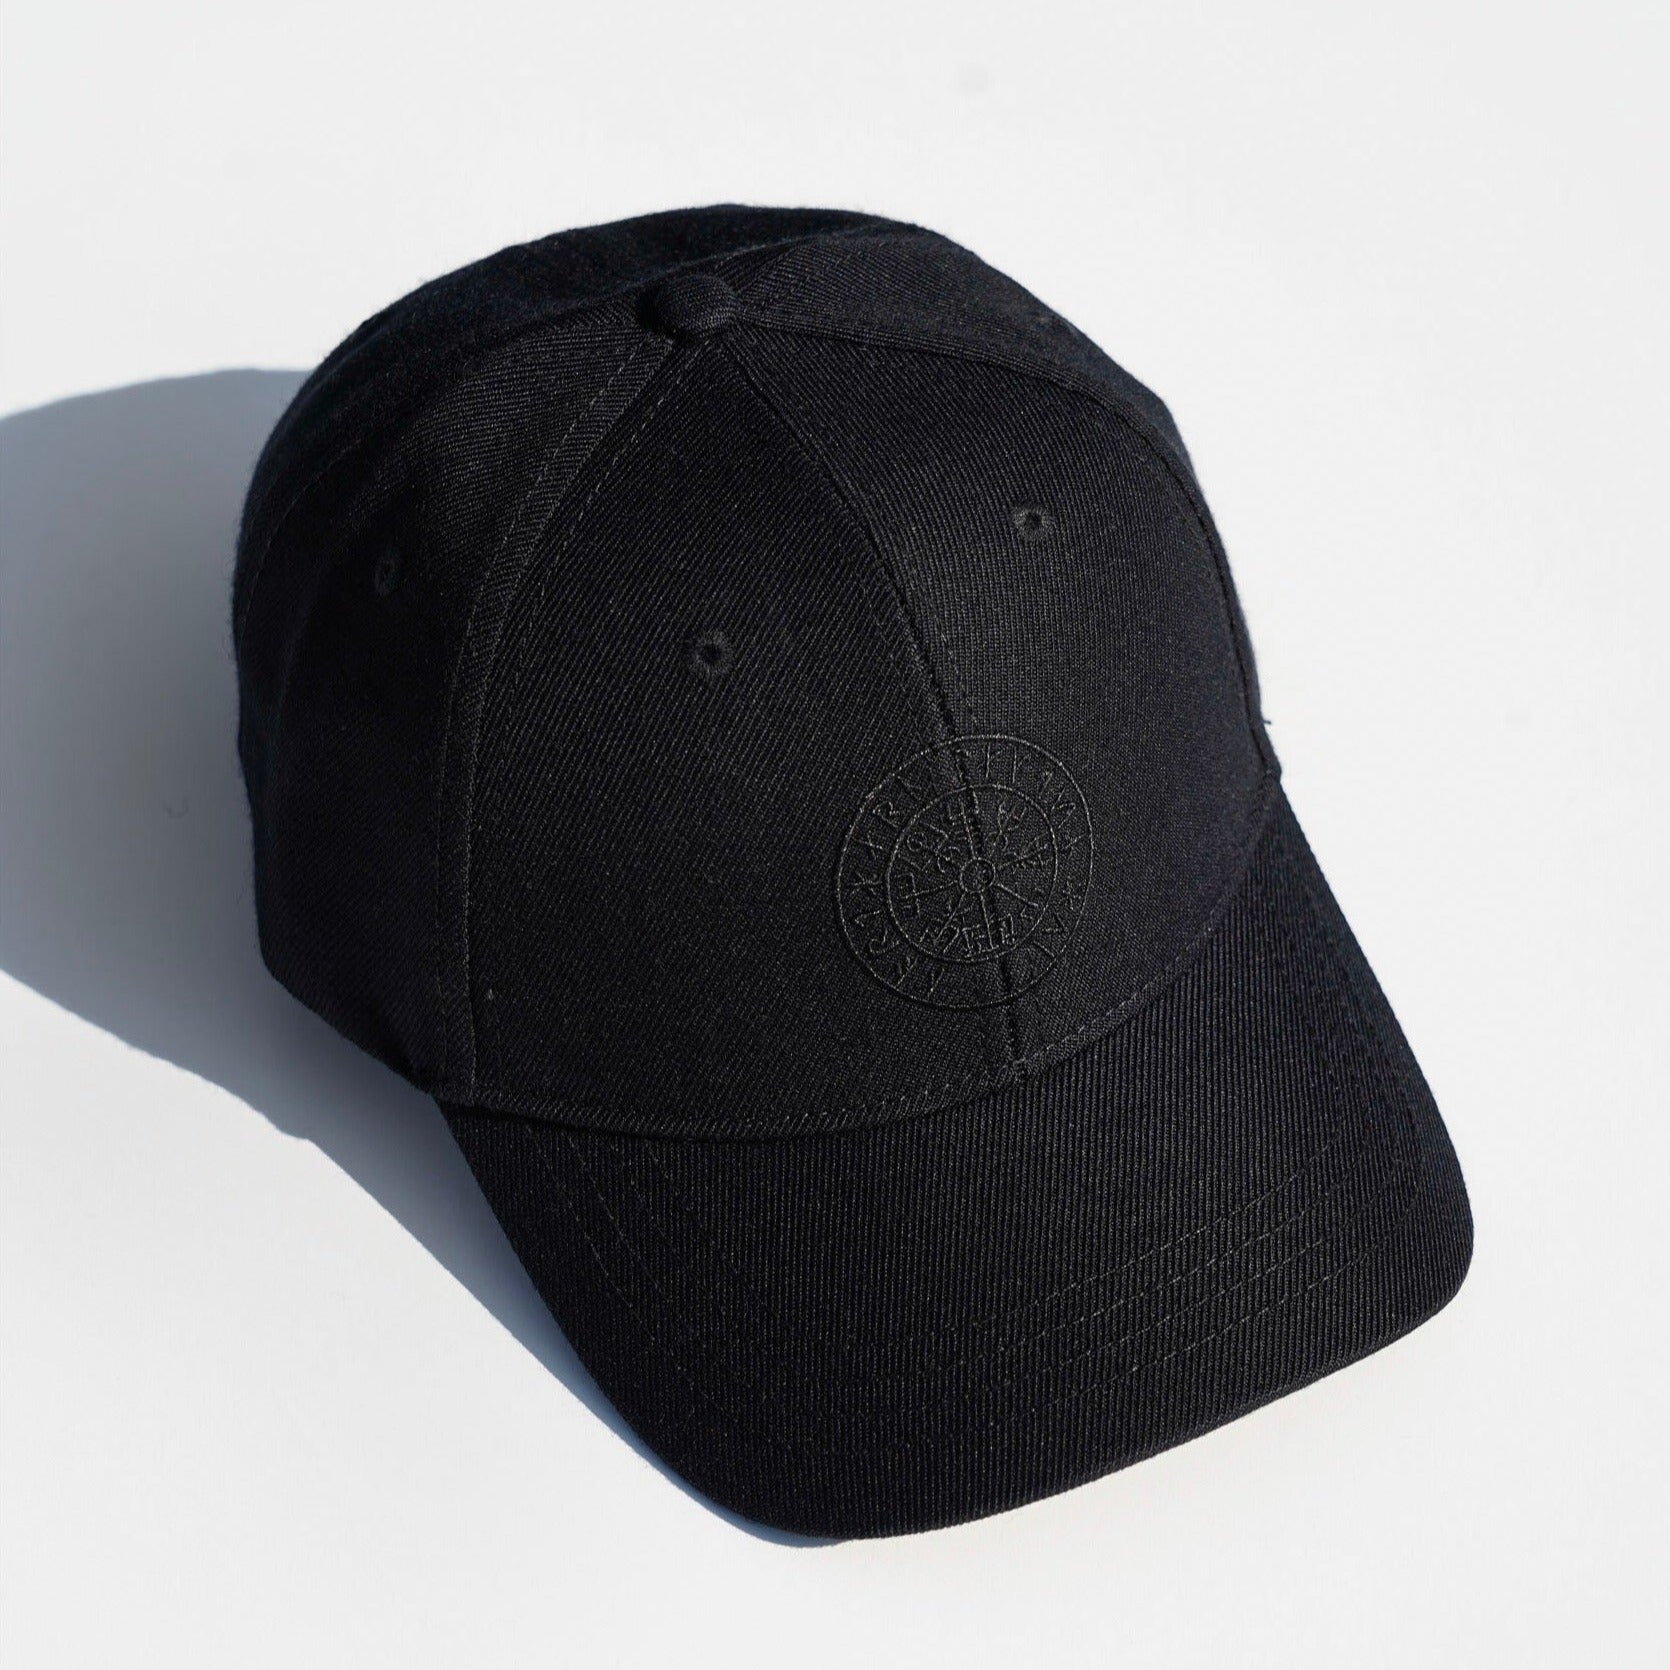 Vegvisir cap - Black/black